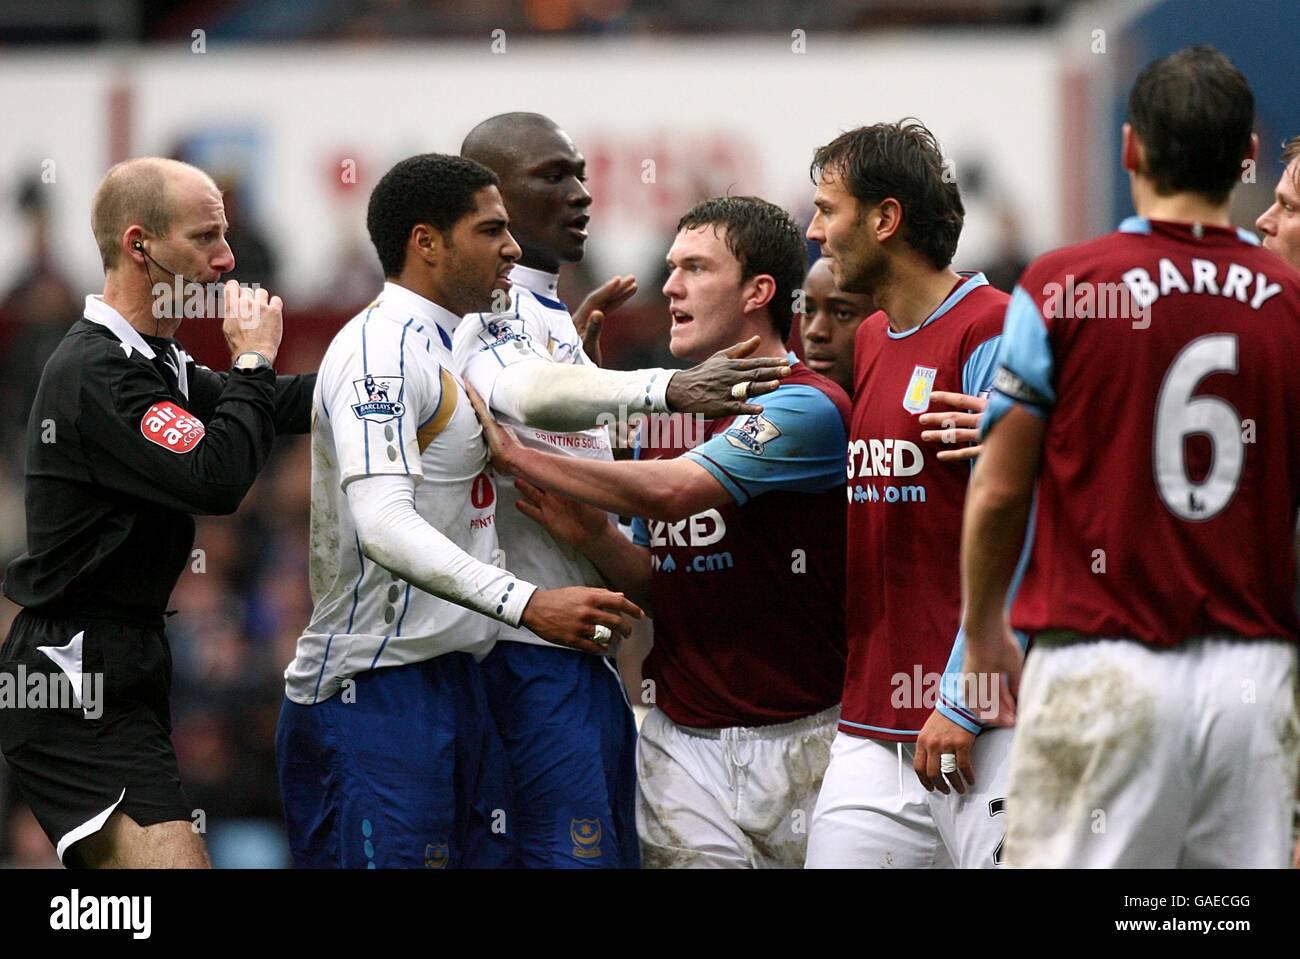 Fußball - Barclays Premier League - Aston Villa V Portsmouth - Villa Park. Spieler aus beiden Teams konfrontieren sich. Stockfoto